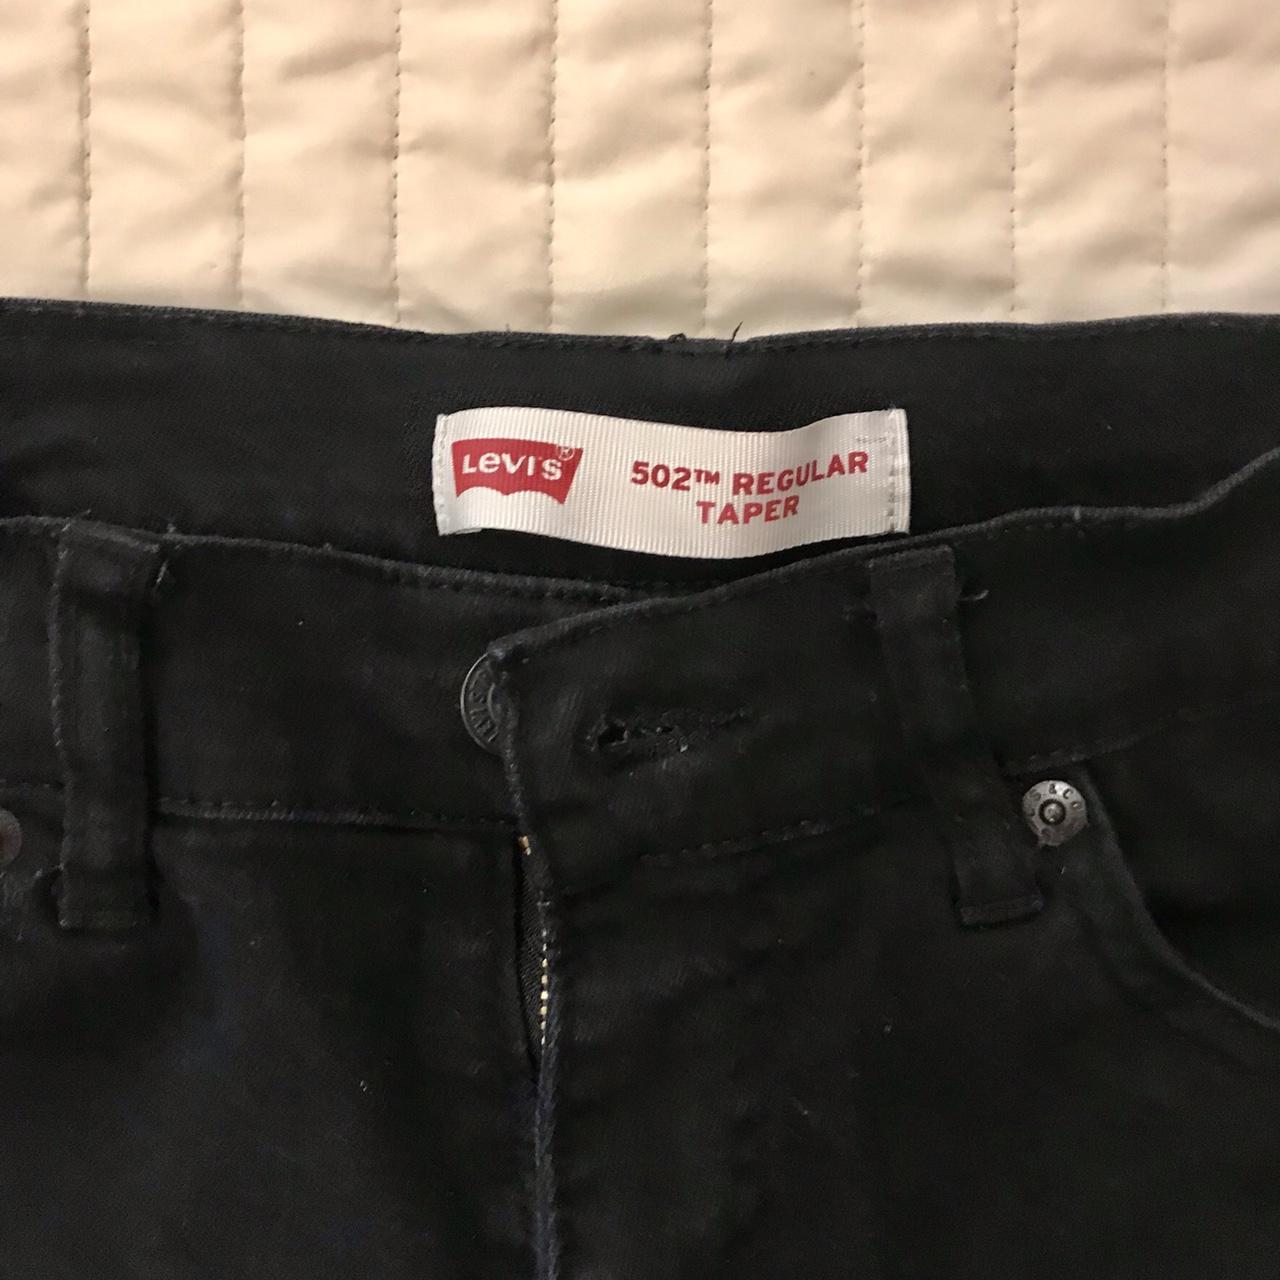 Levi's 502 TM regular taper black jeans. Size W27 x... - Depop